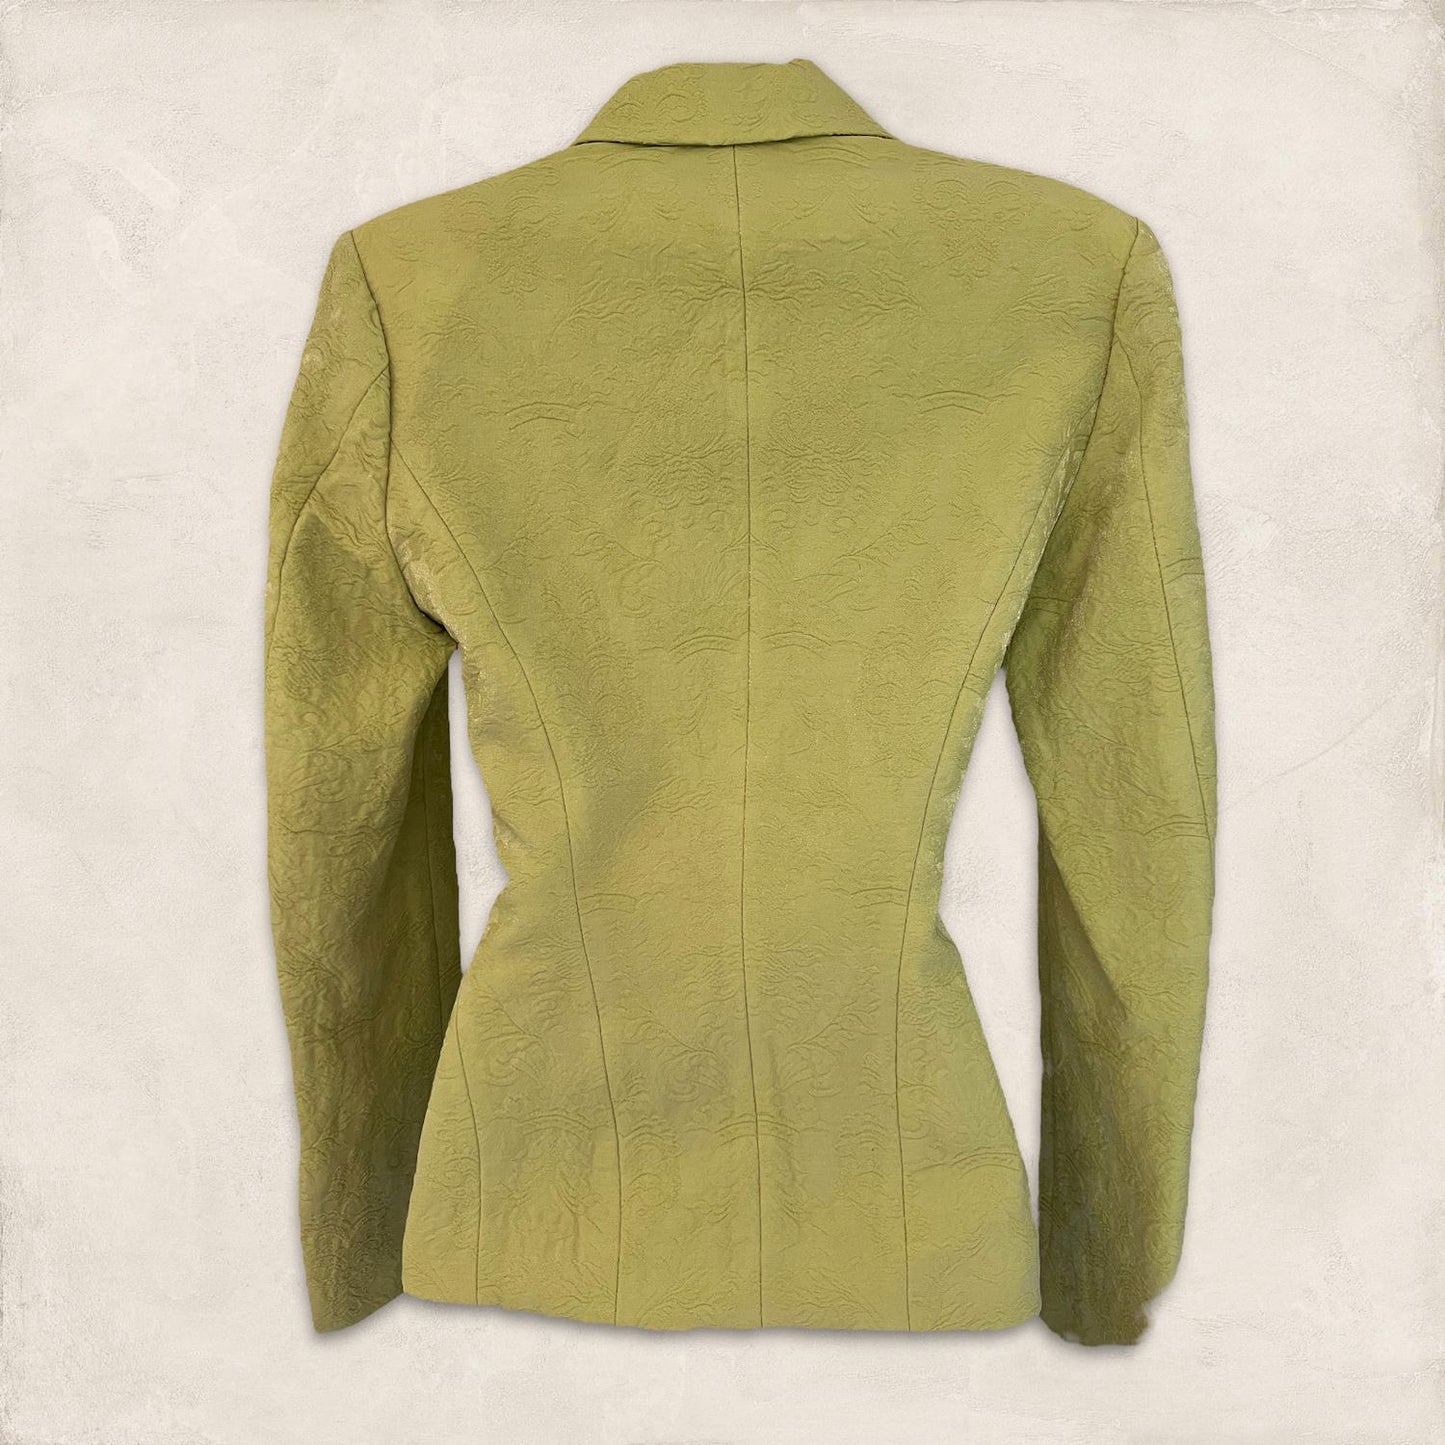 Karen Millen Lime Green Wool Mix Textured Shimmer Jacket UK 8 US 4 EU 36 Timeless Fashions